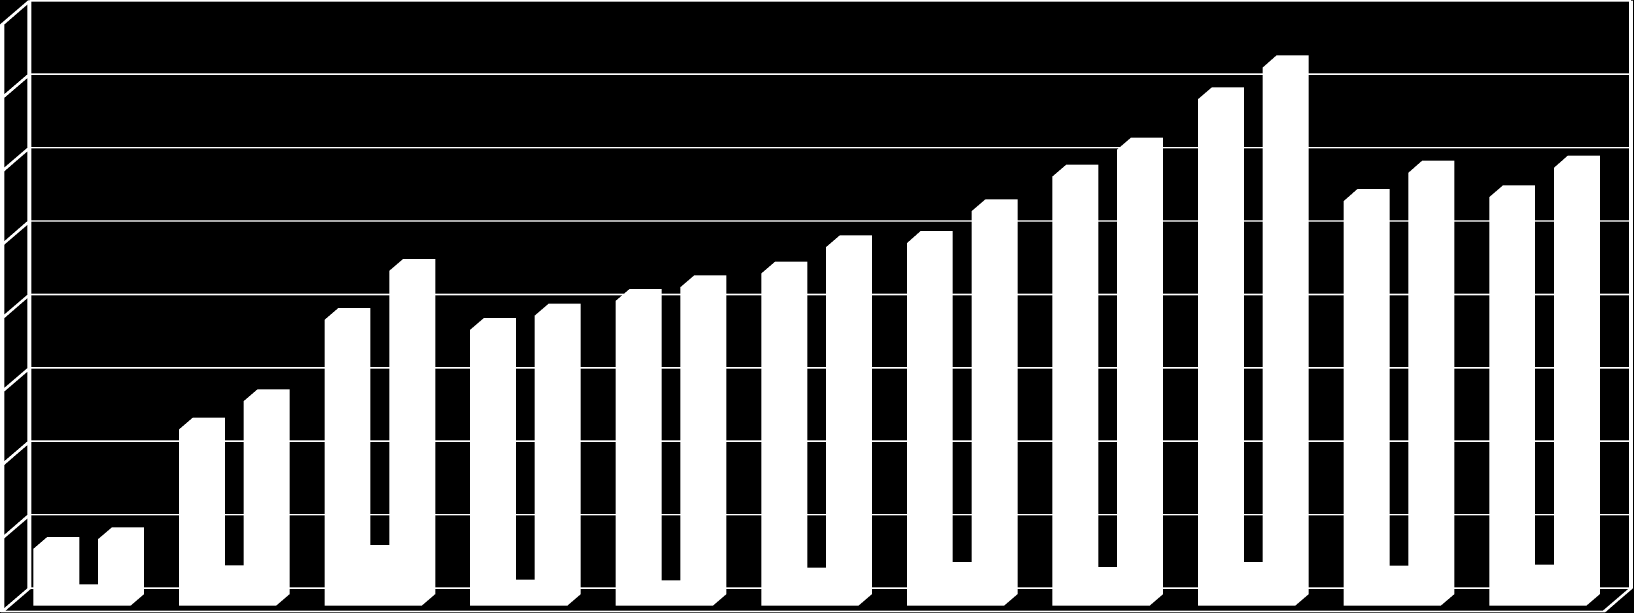 2015 yılı EKUAL veri tabanları toplam abonelik tutarı (KDV dahil): 36.5 Milyon USD EKUAL VERİ TABANLARI CARİ TOPLAM GİDERİ (Milyon USD) 40.00 35.00 30.00 25.00 20.00 15.00 36.67 34.50 31.08 29.24 29.